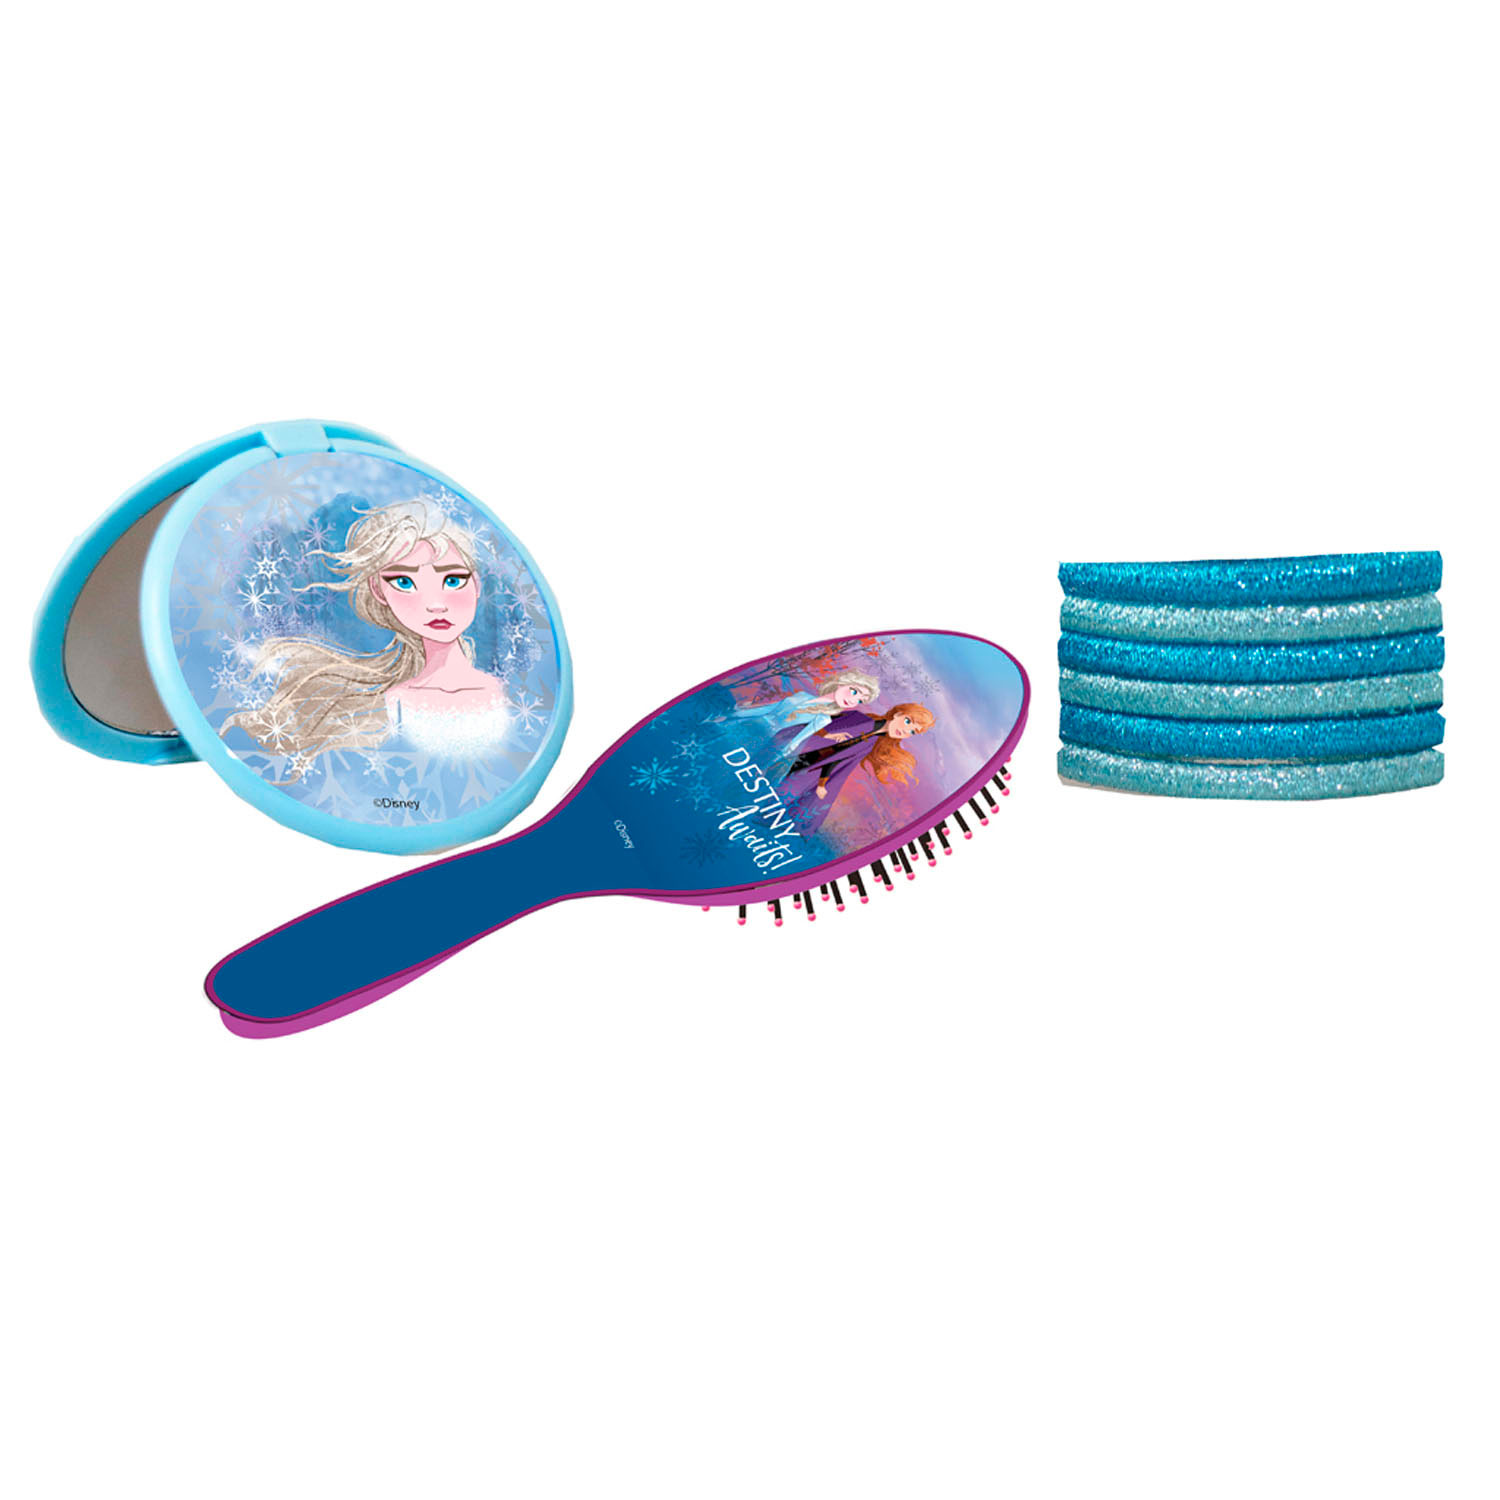 Vechter Doen schipper Hair set Frozen 2, 8 pcs. | Thimble Toys